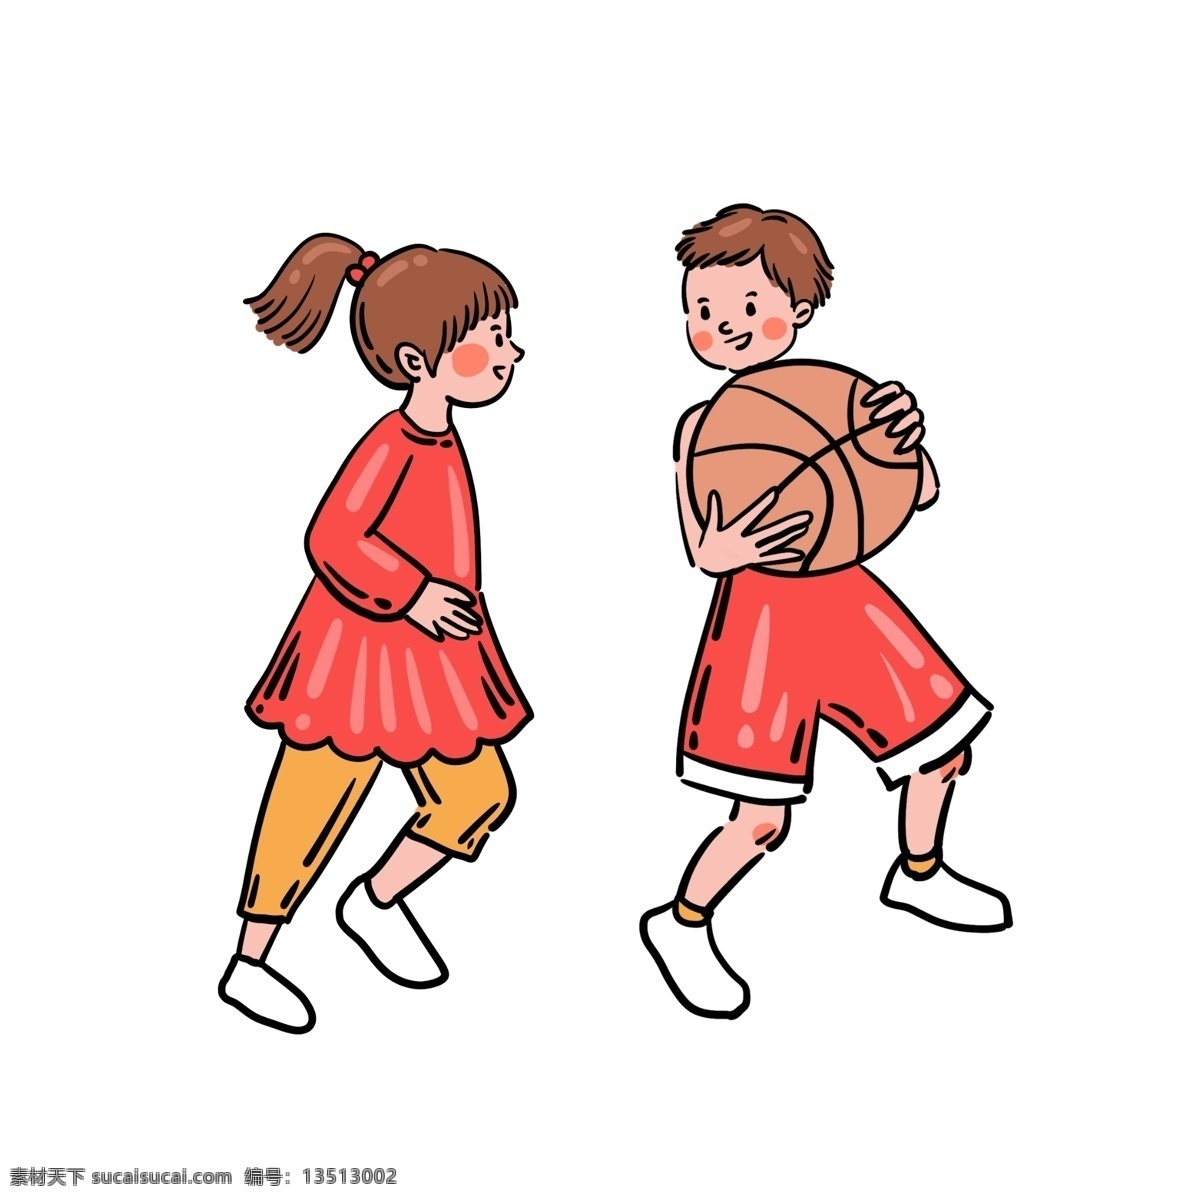 卡通 矢量 免 抠 可爱 篮球 人物 免抠 打篮球 女生 男生 黄色 红色 篮球衣 小白鞋 运动 夏季 快乐 开心